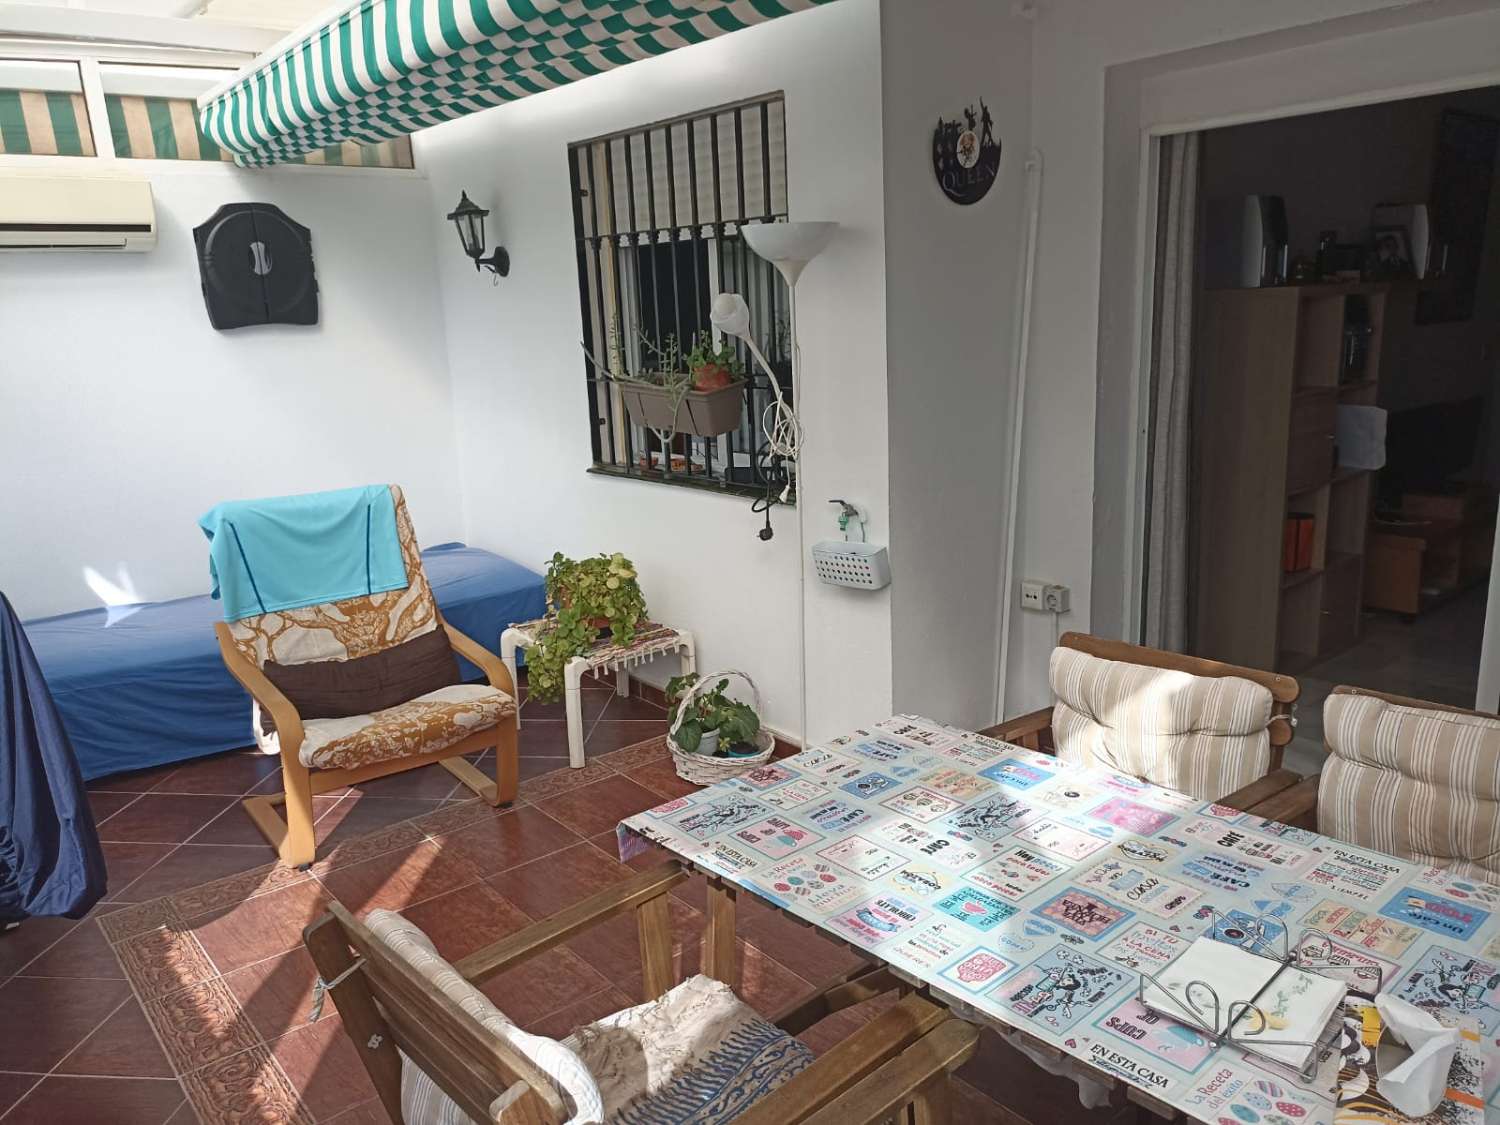 Se vende piso de 2 dormitorios en Riviera del sol, Mijas.